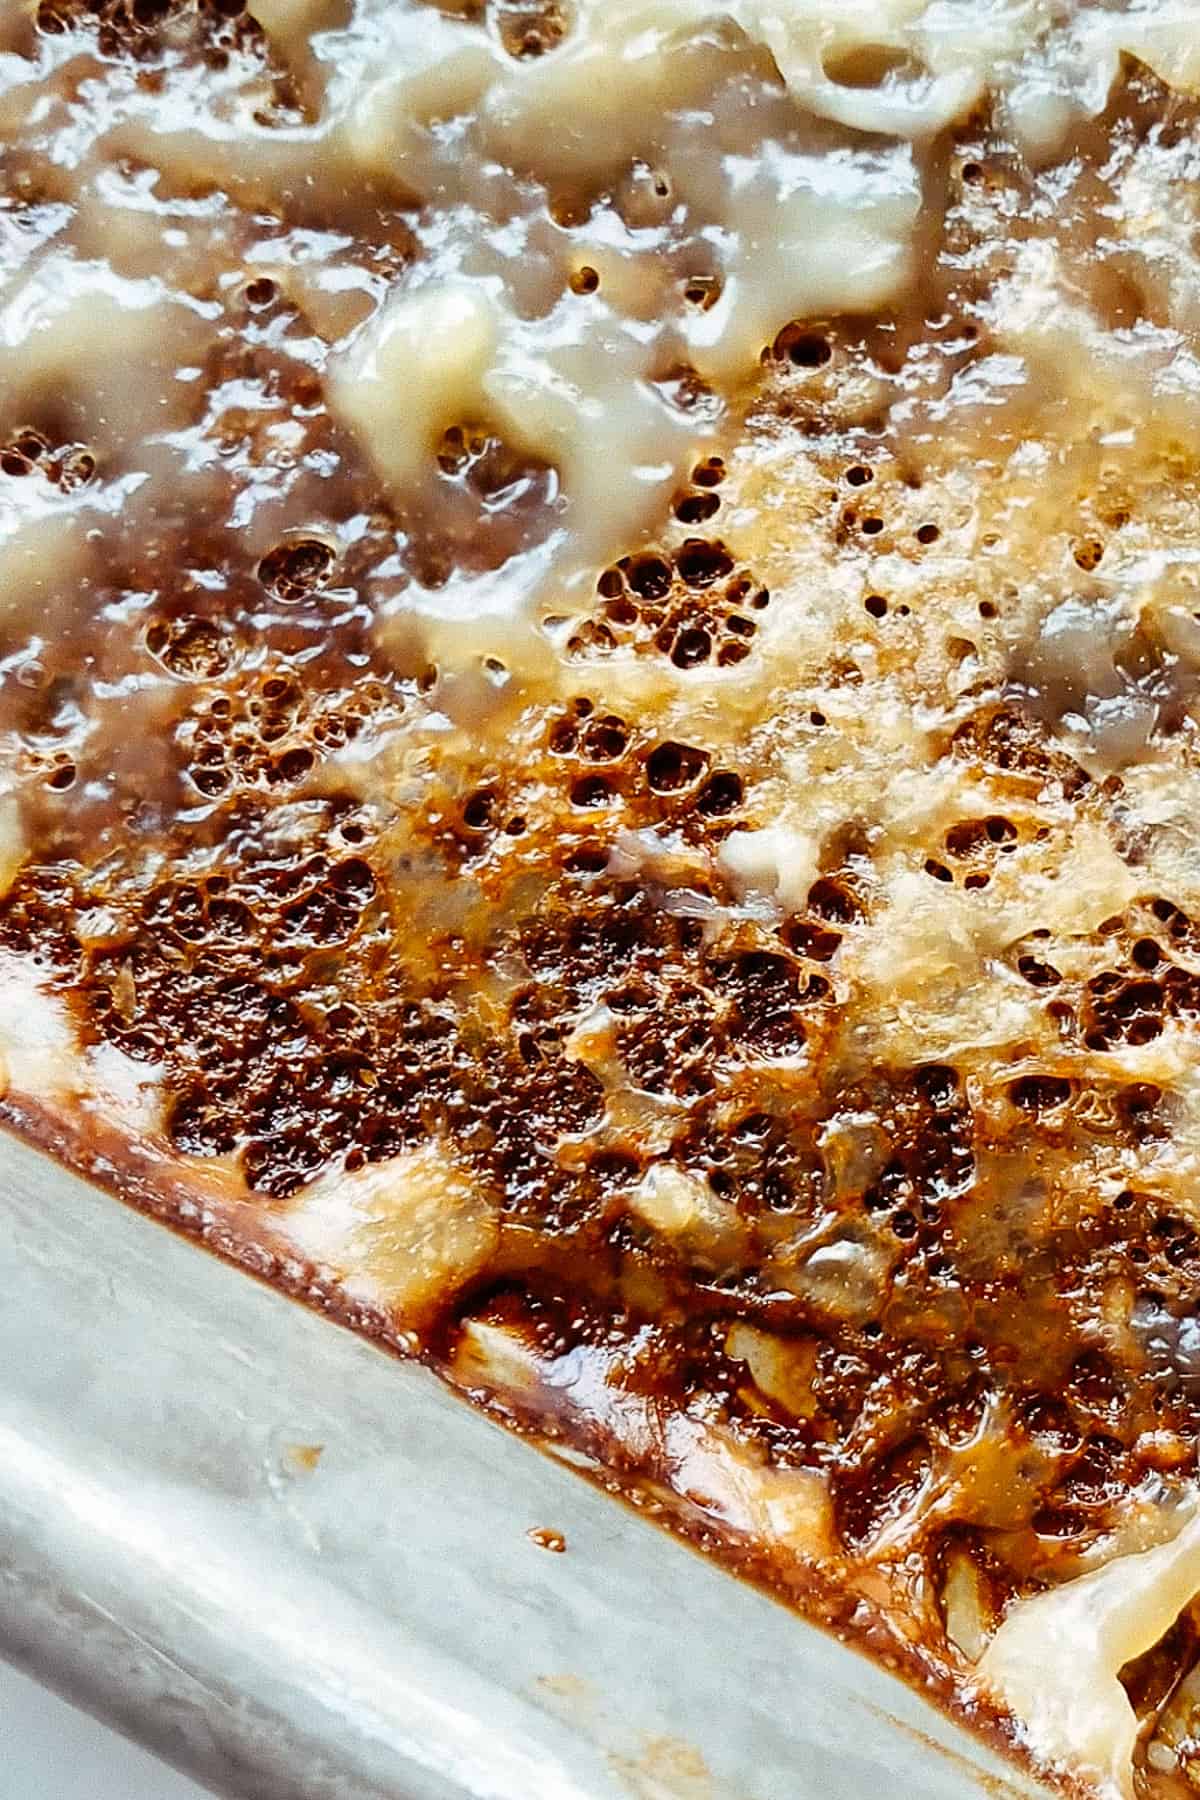 burned gritty pudding texture on pan for turkish kazandibi